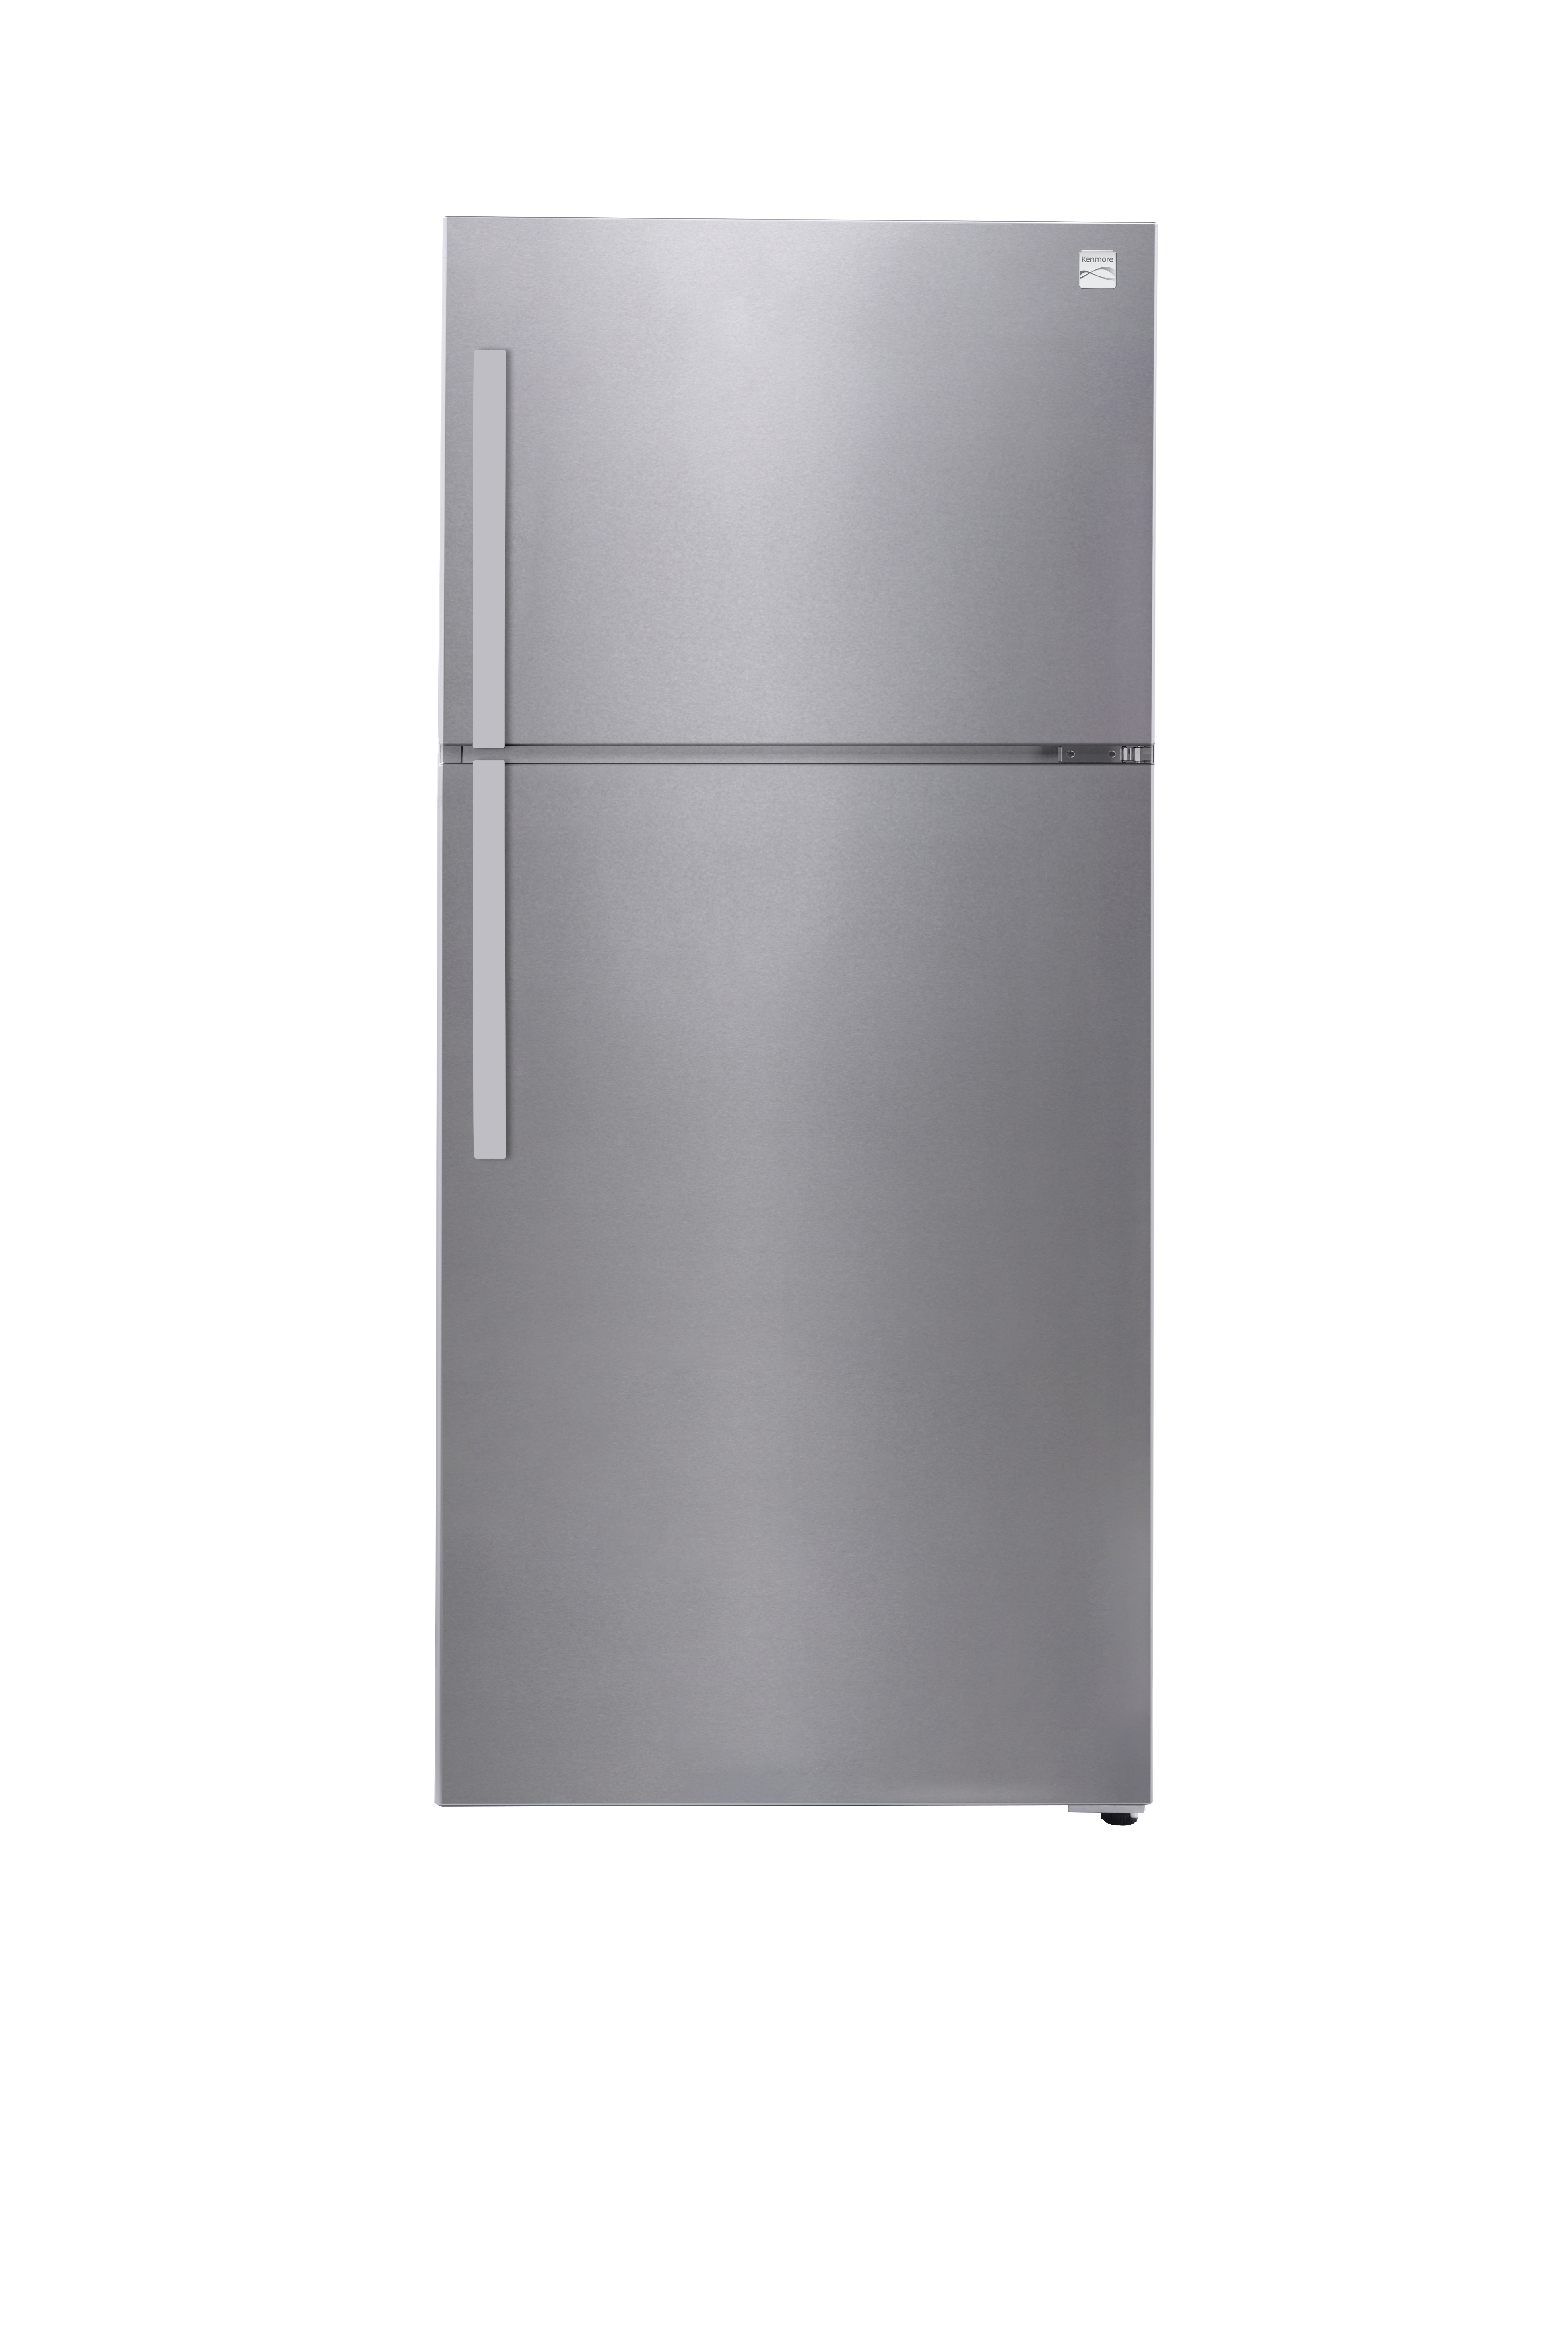 Kenmore 60765  18.3 cu. ft. Deluxe Top-Freezer Refrigerator  eStar Certified - Fingerprint Resistant Stainless Steel Look Finish